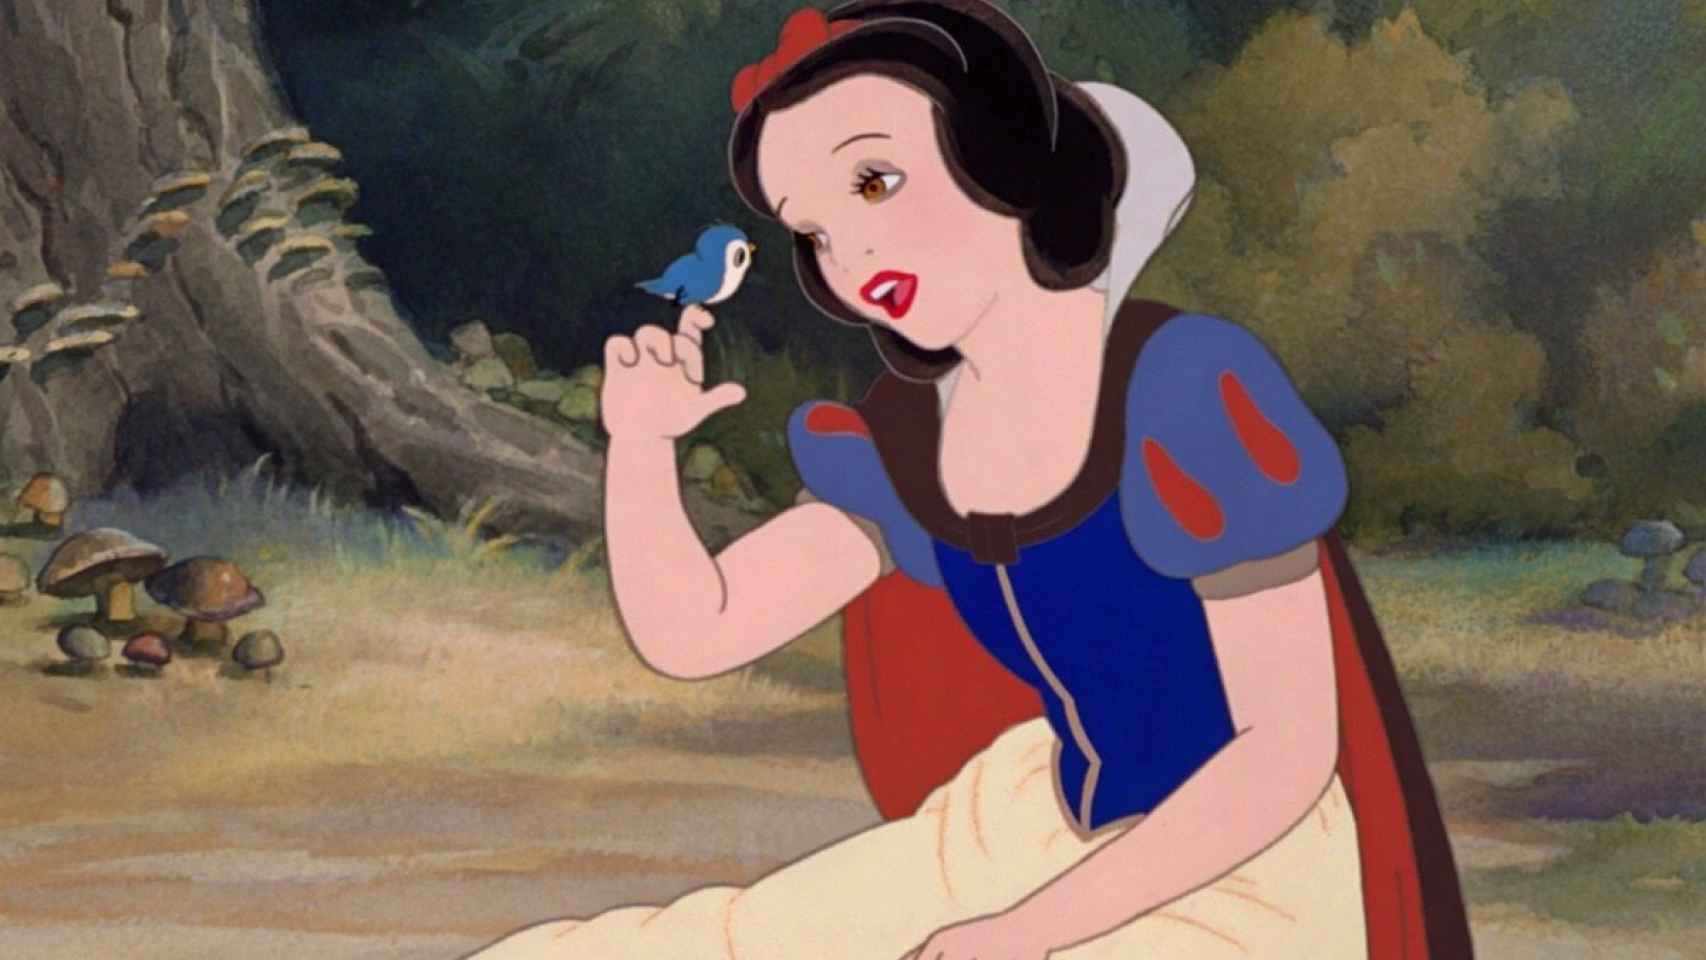 Por qué Disney + no tiene el doblaje original de 'Blancanieves' o ' Cenicienta'?